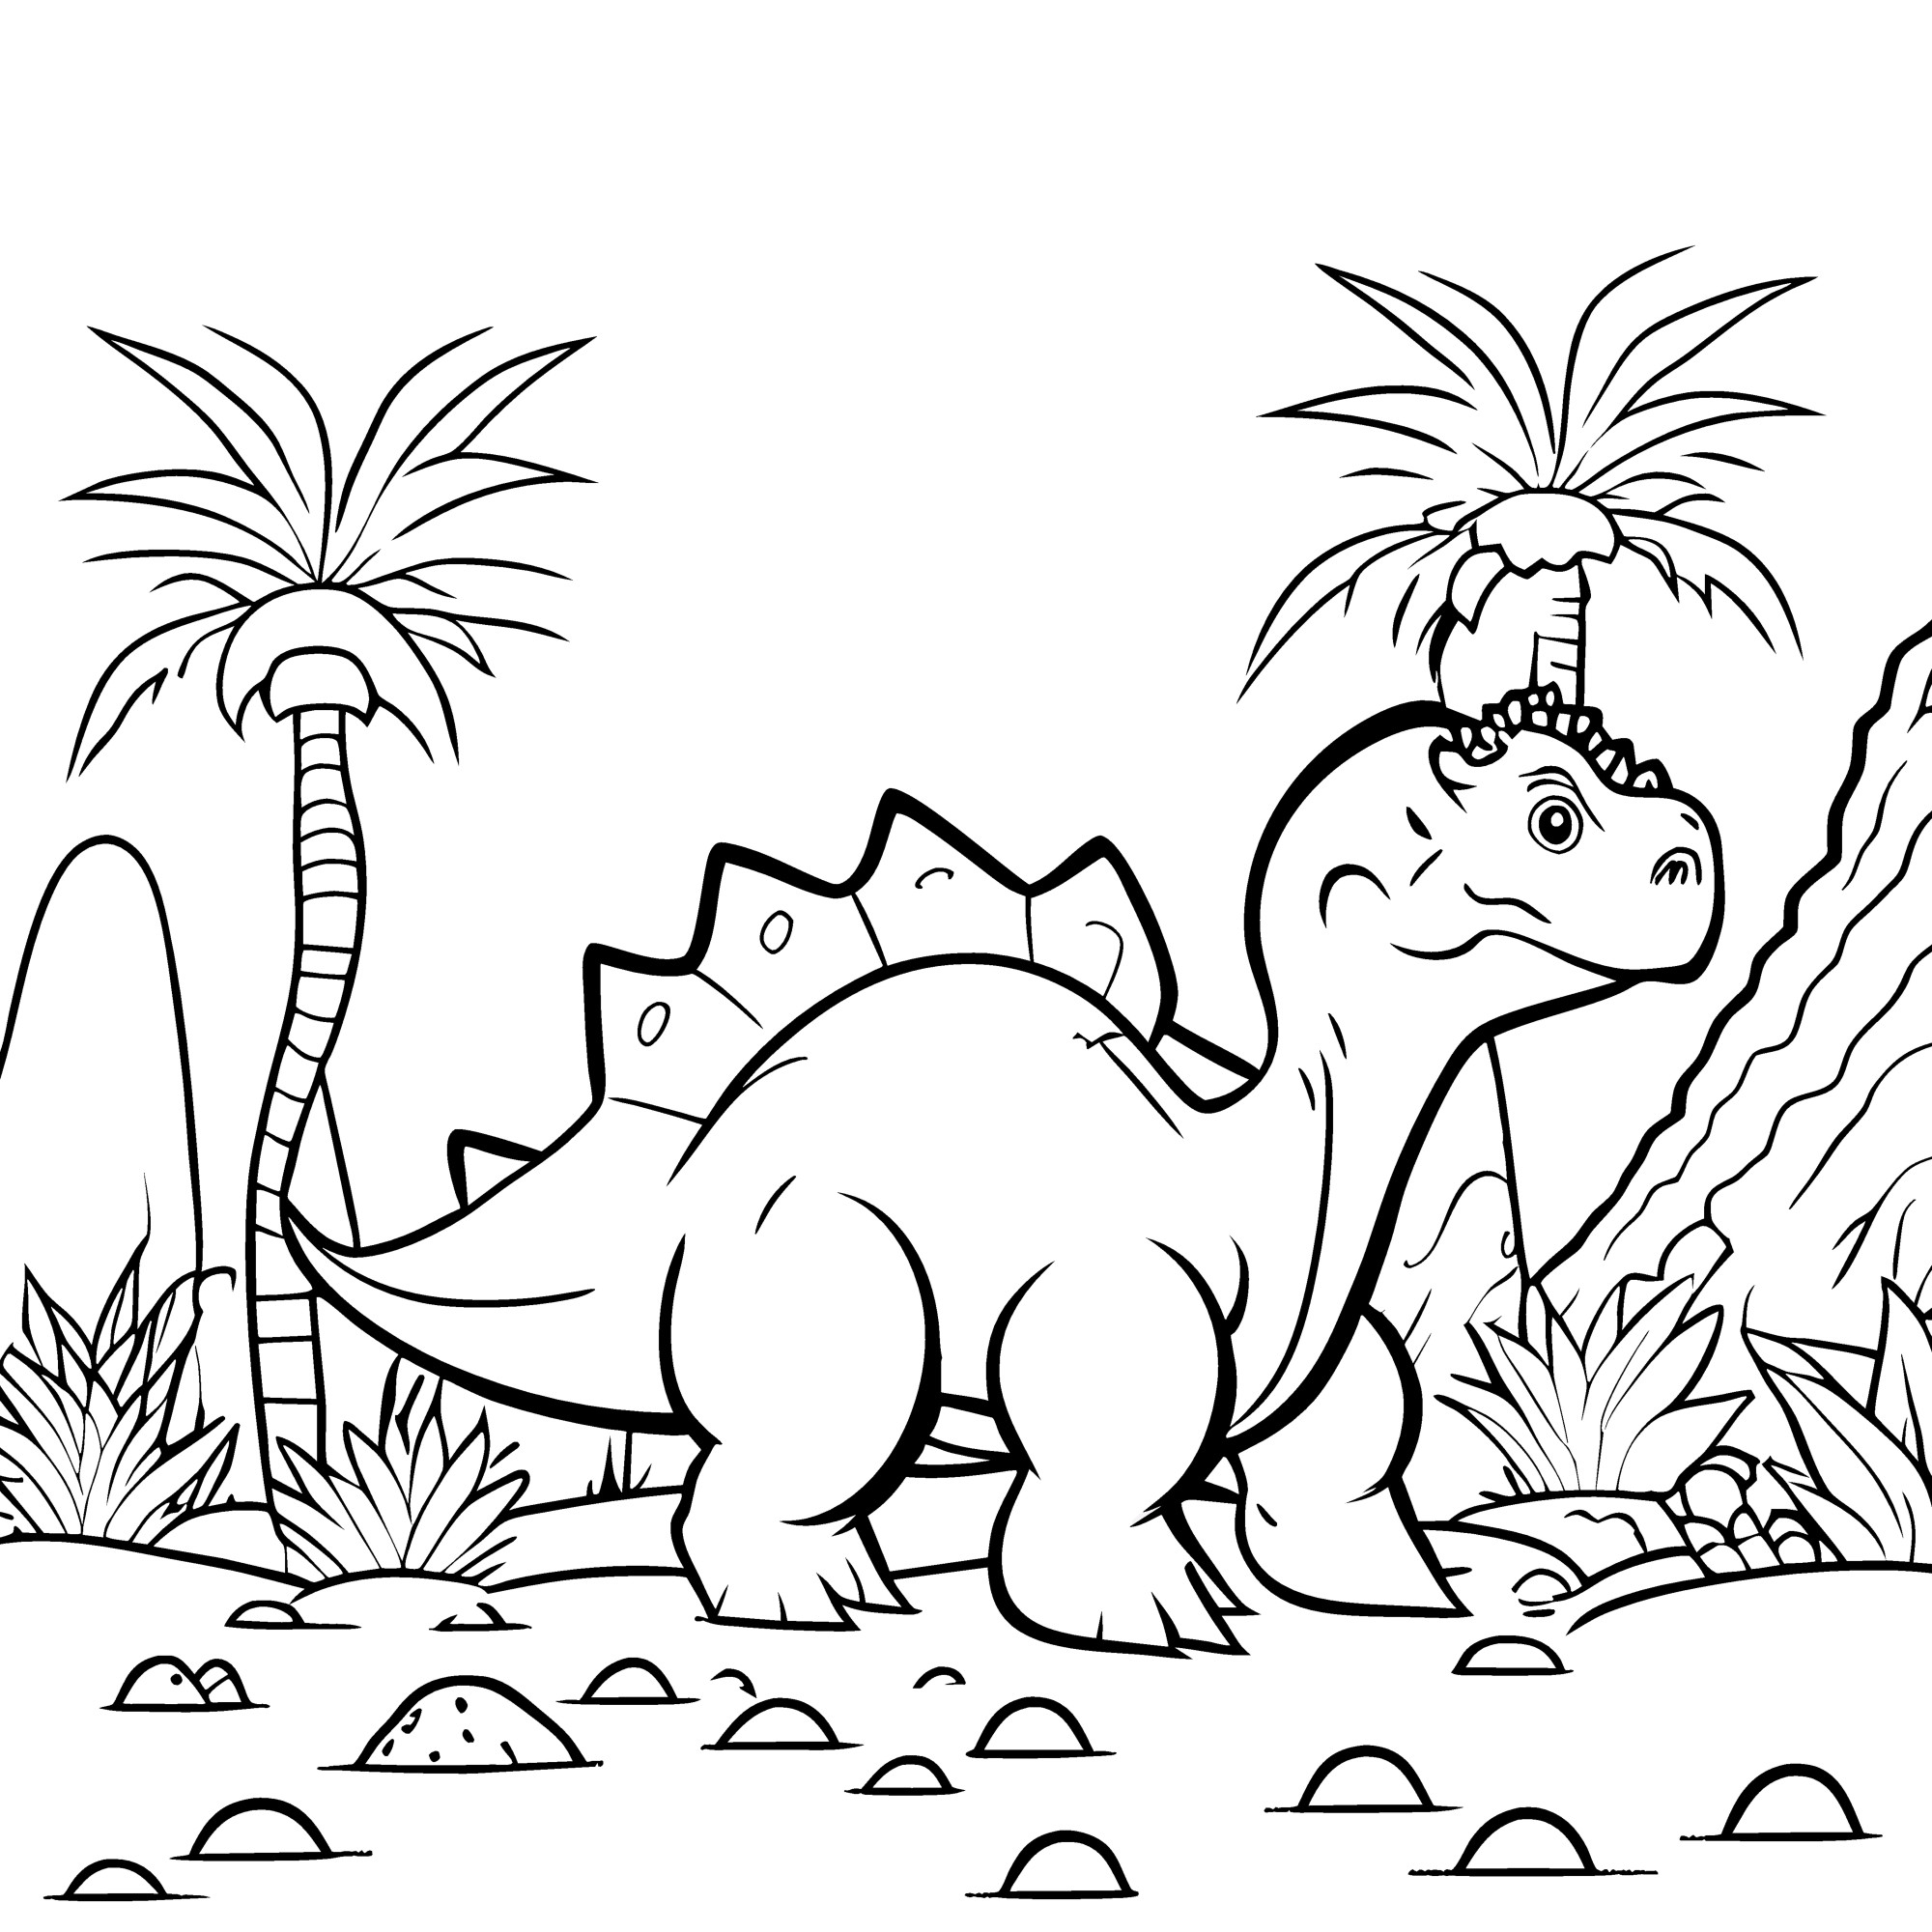 Раскраска для детей: динозавр стегозавр